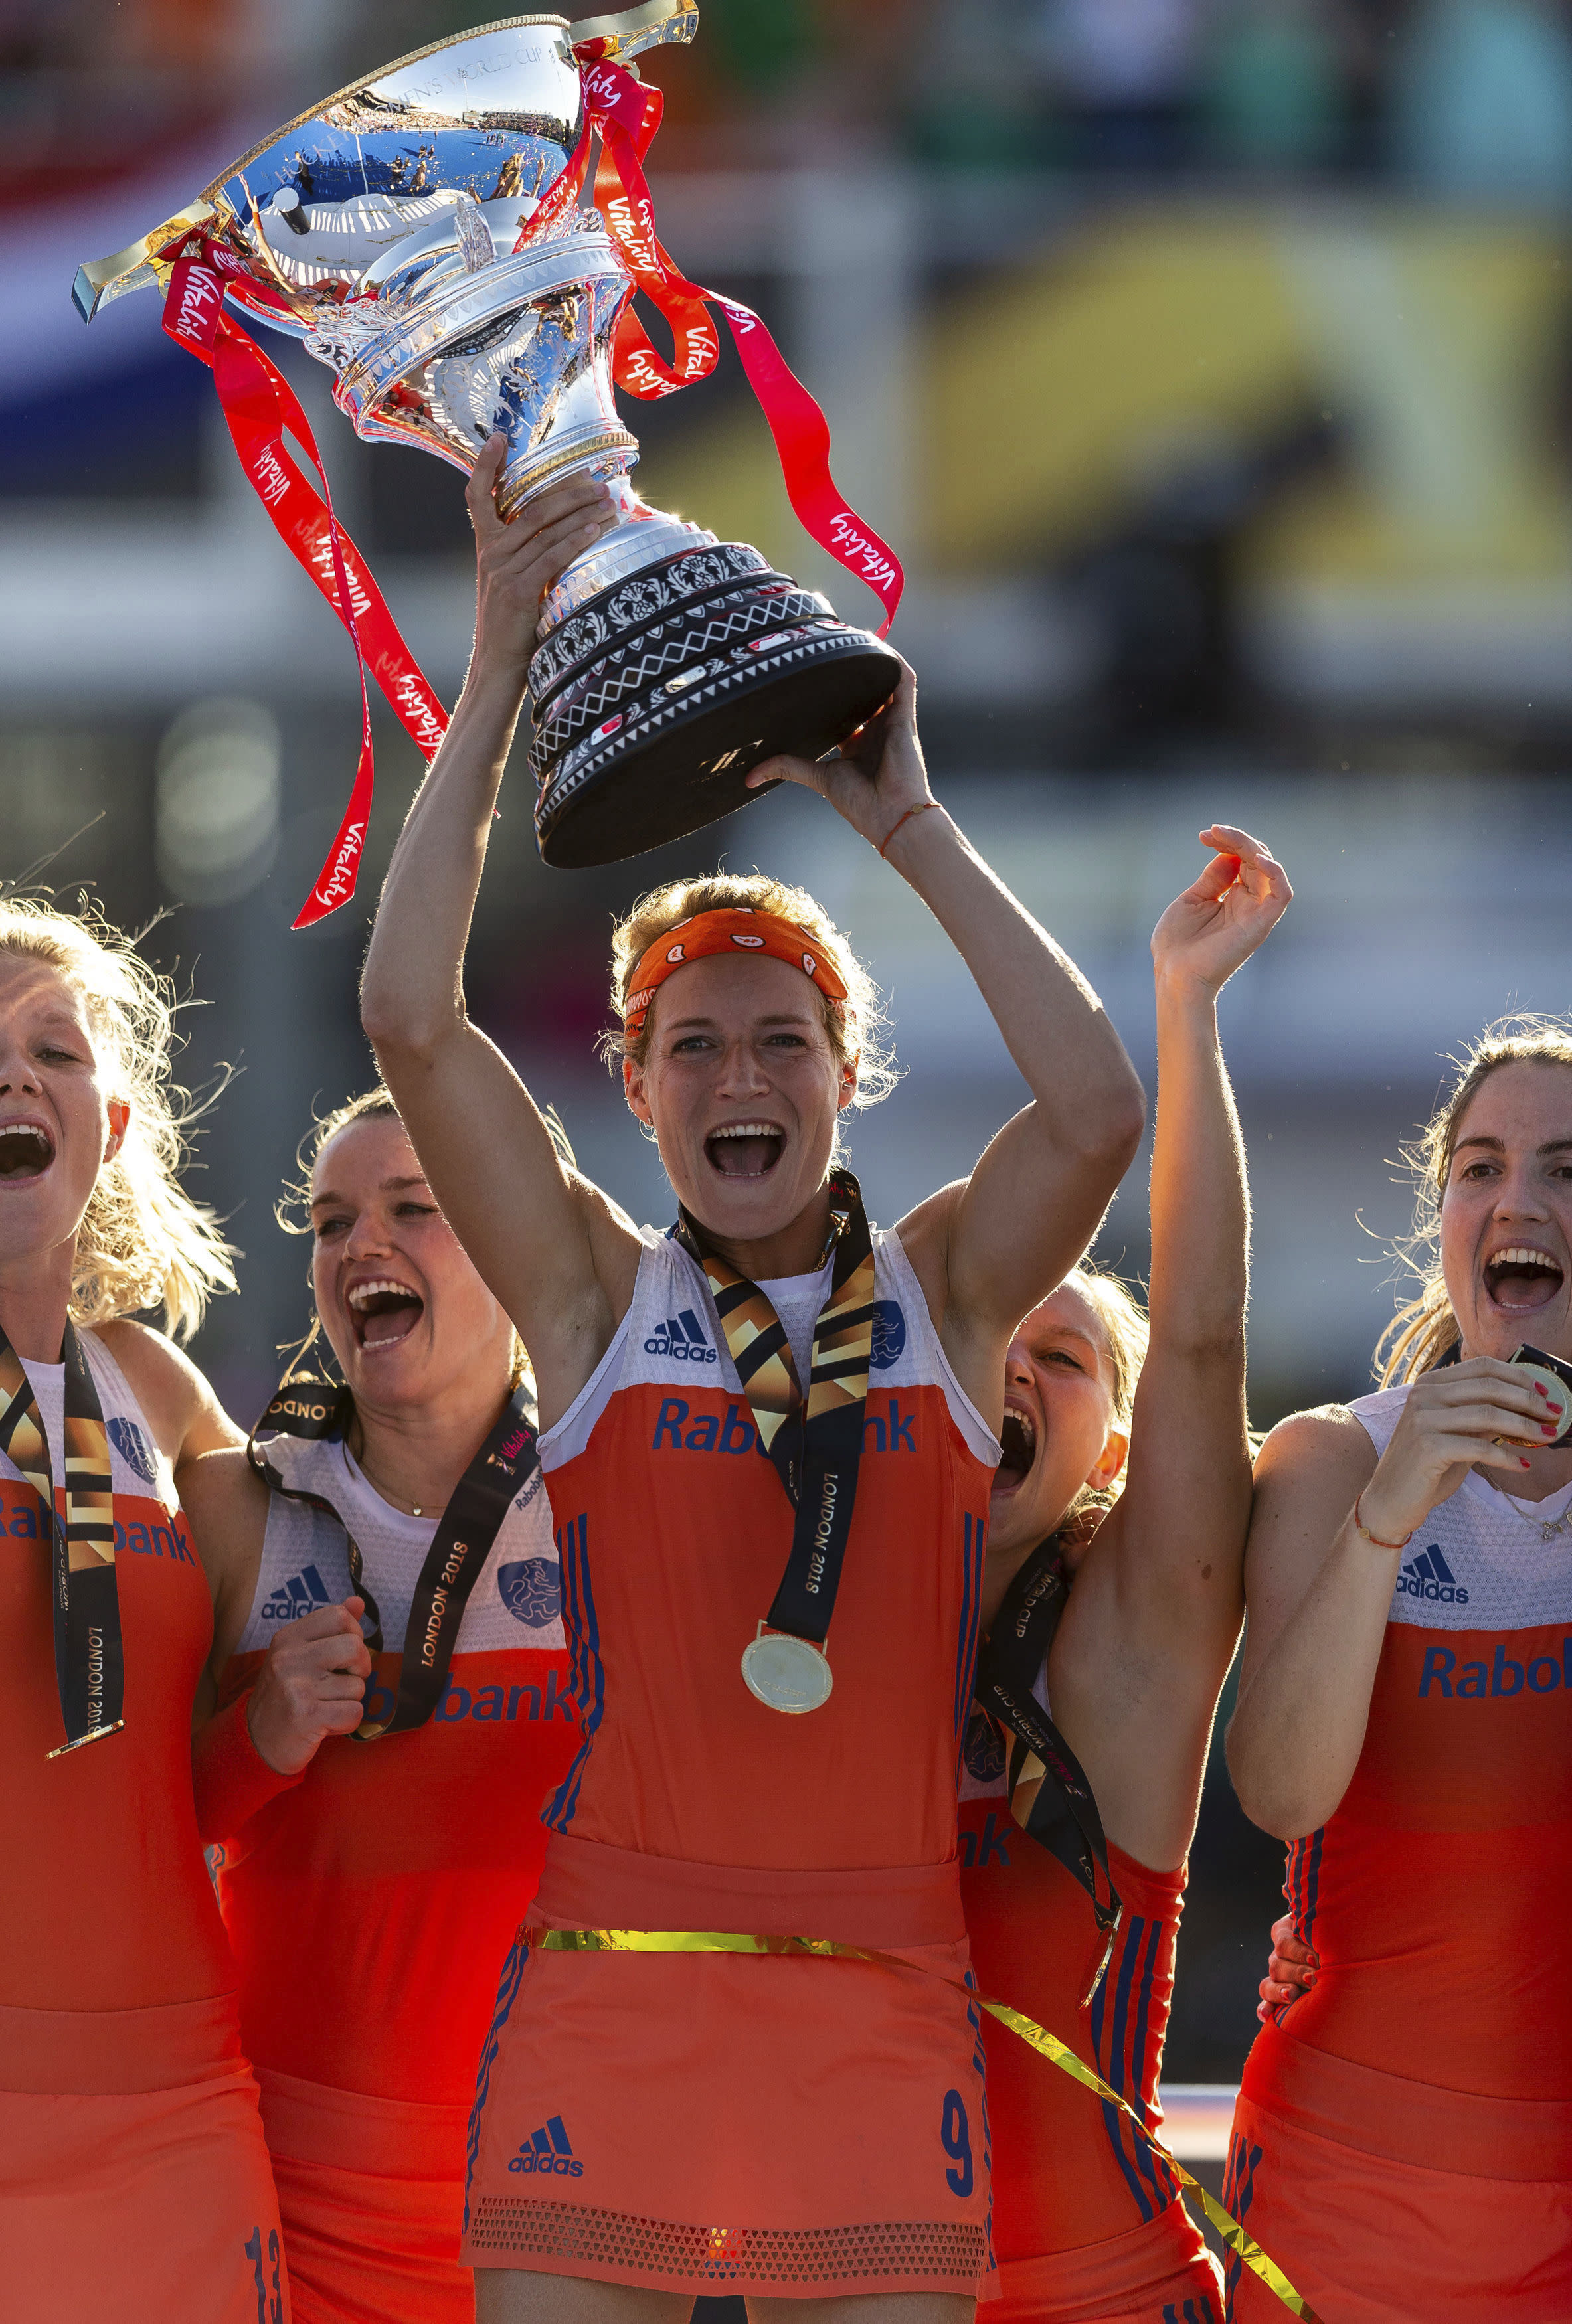 Dutch win 8th Women's World Cup field hockey title